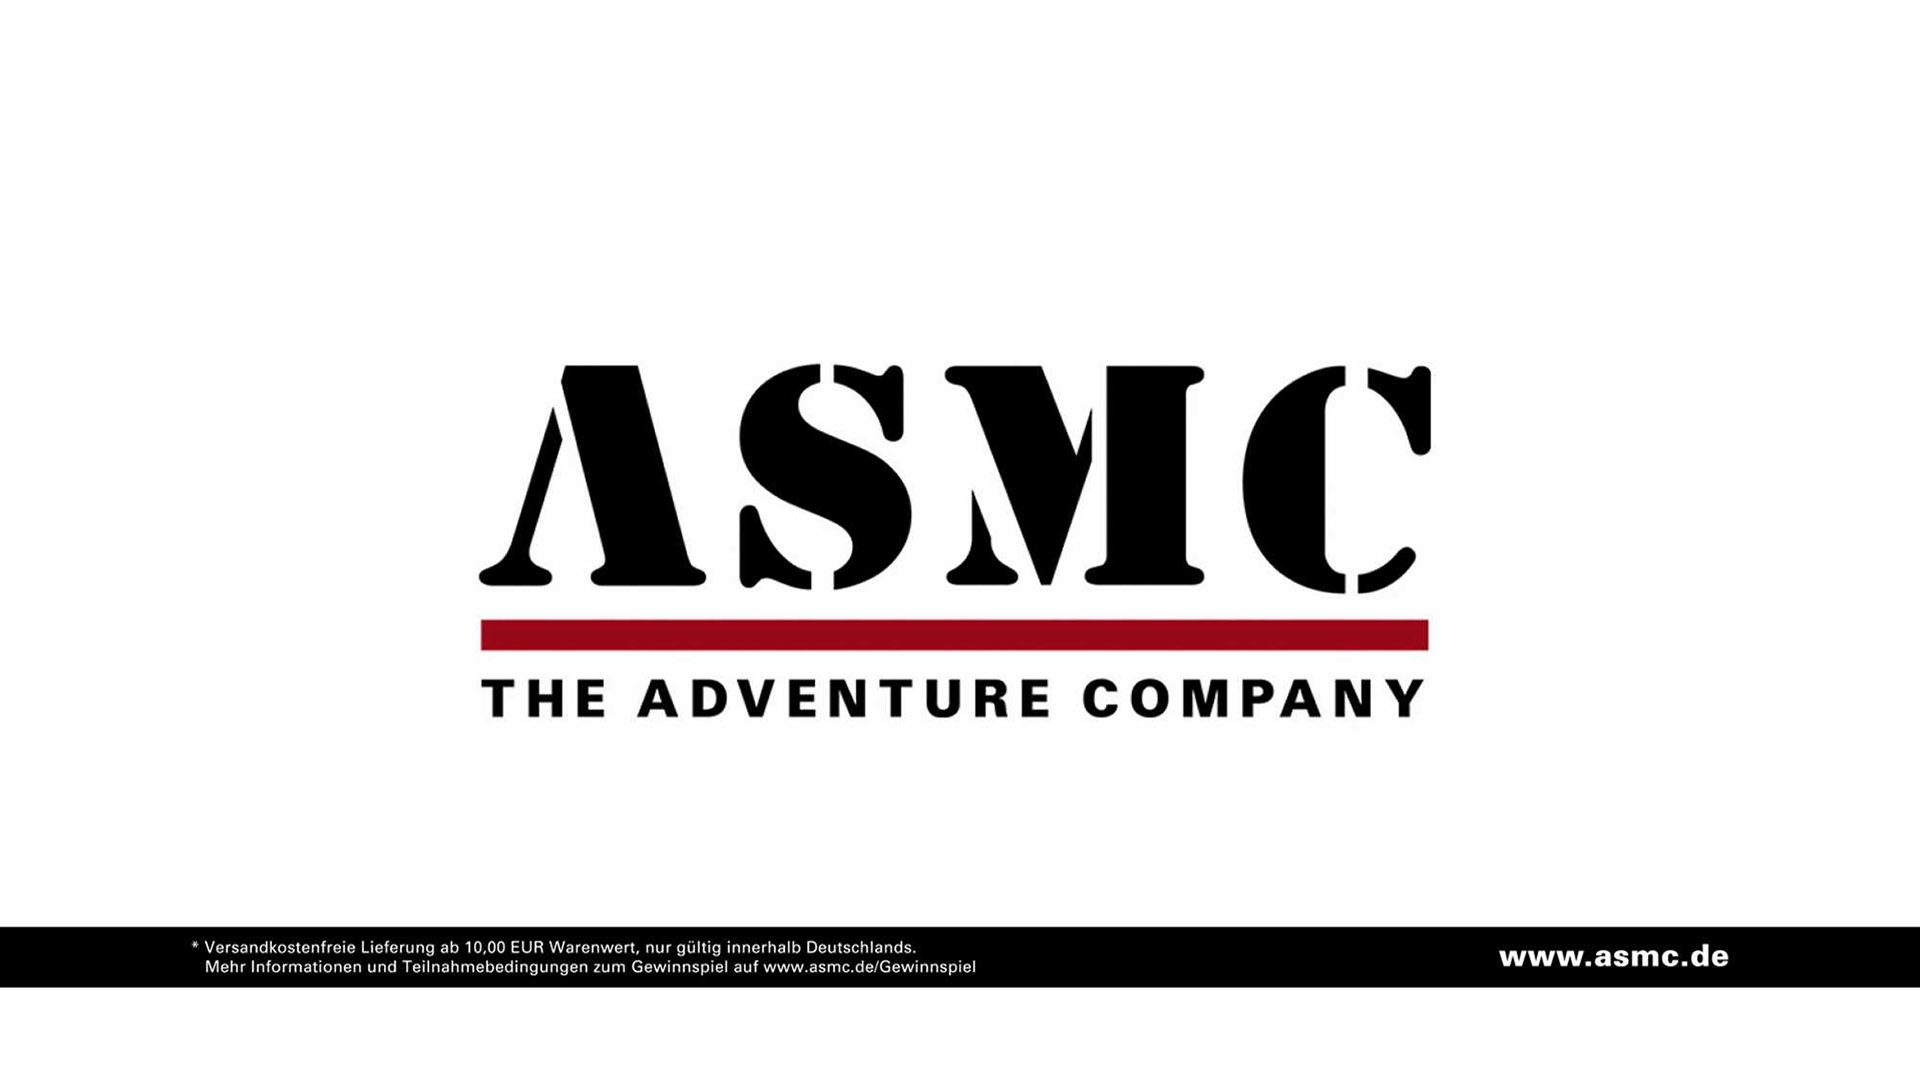 Das Bild zeigt die Worte "ASMC - The adventure company" auf einem weißen Hintergrund. Sie sind in schwarzer Schrift. Darunter ist ein schwarzer Banner gezogen. Das Bild dient als Sliderbild für den Portfolioeintrag ASMC - DRTV Spot von Panda Pictures.